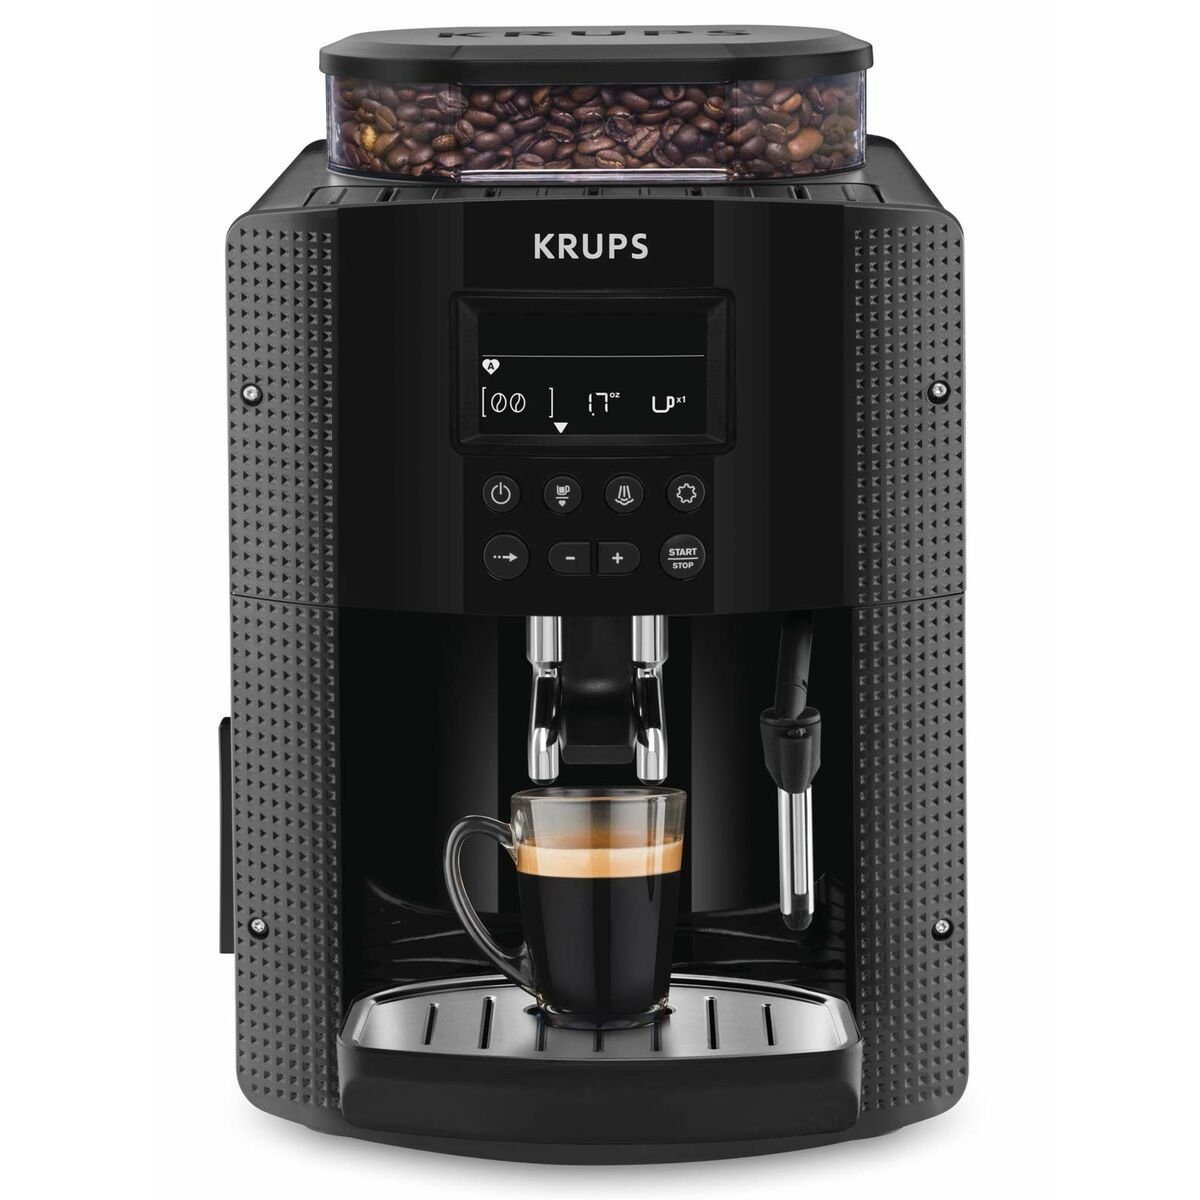 YY8135FD 1450 W Kaffeevollautomat Krups Krups Schwarz Kaffeemaschine Elektrische